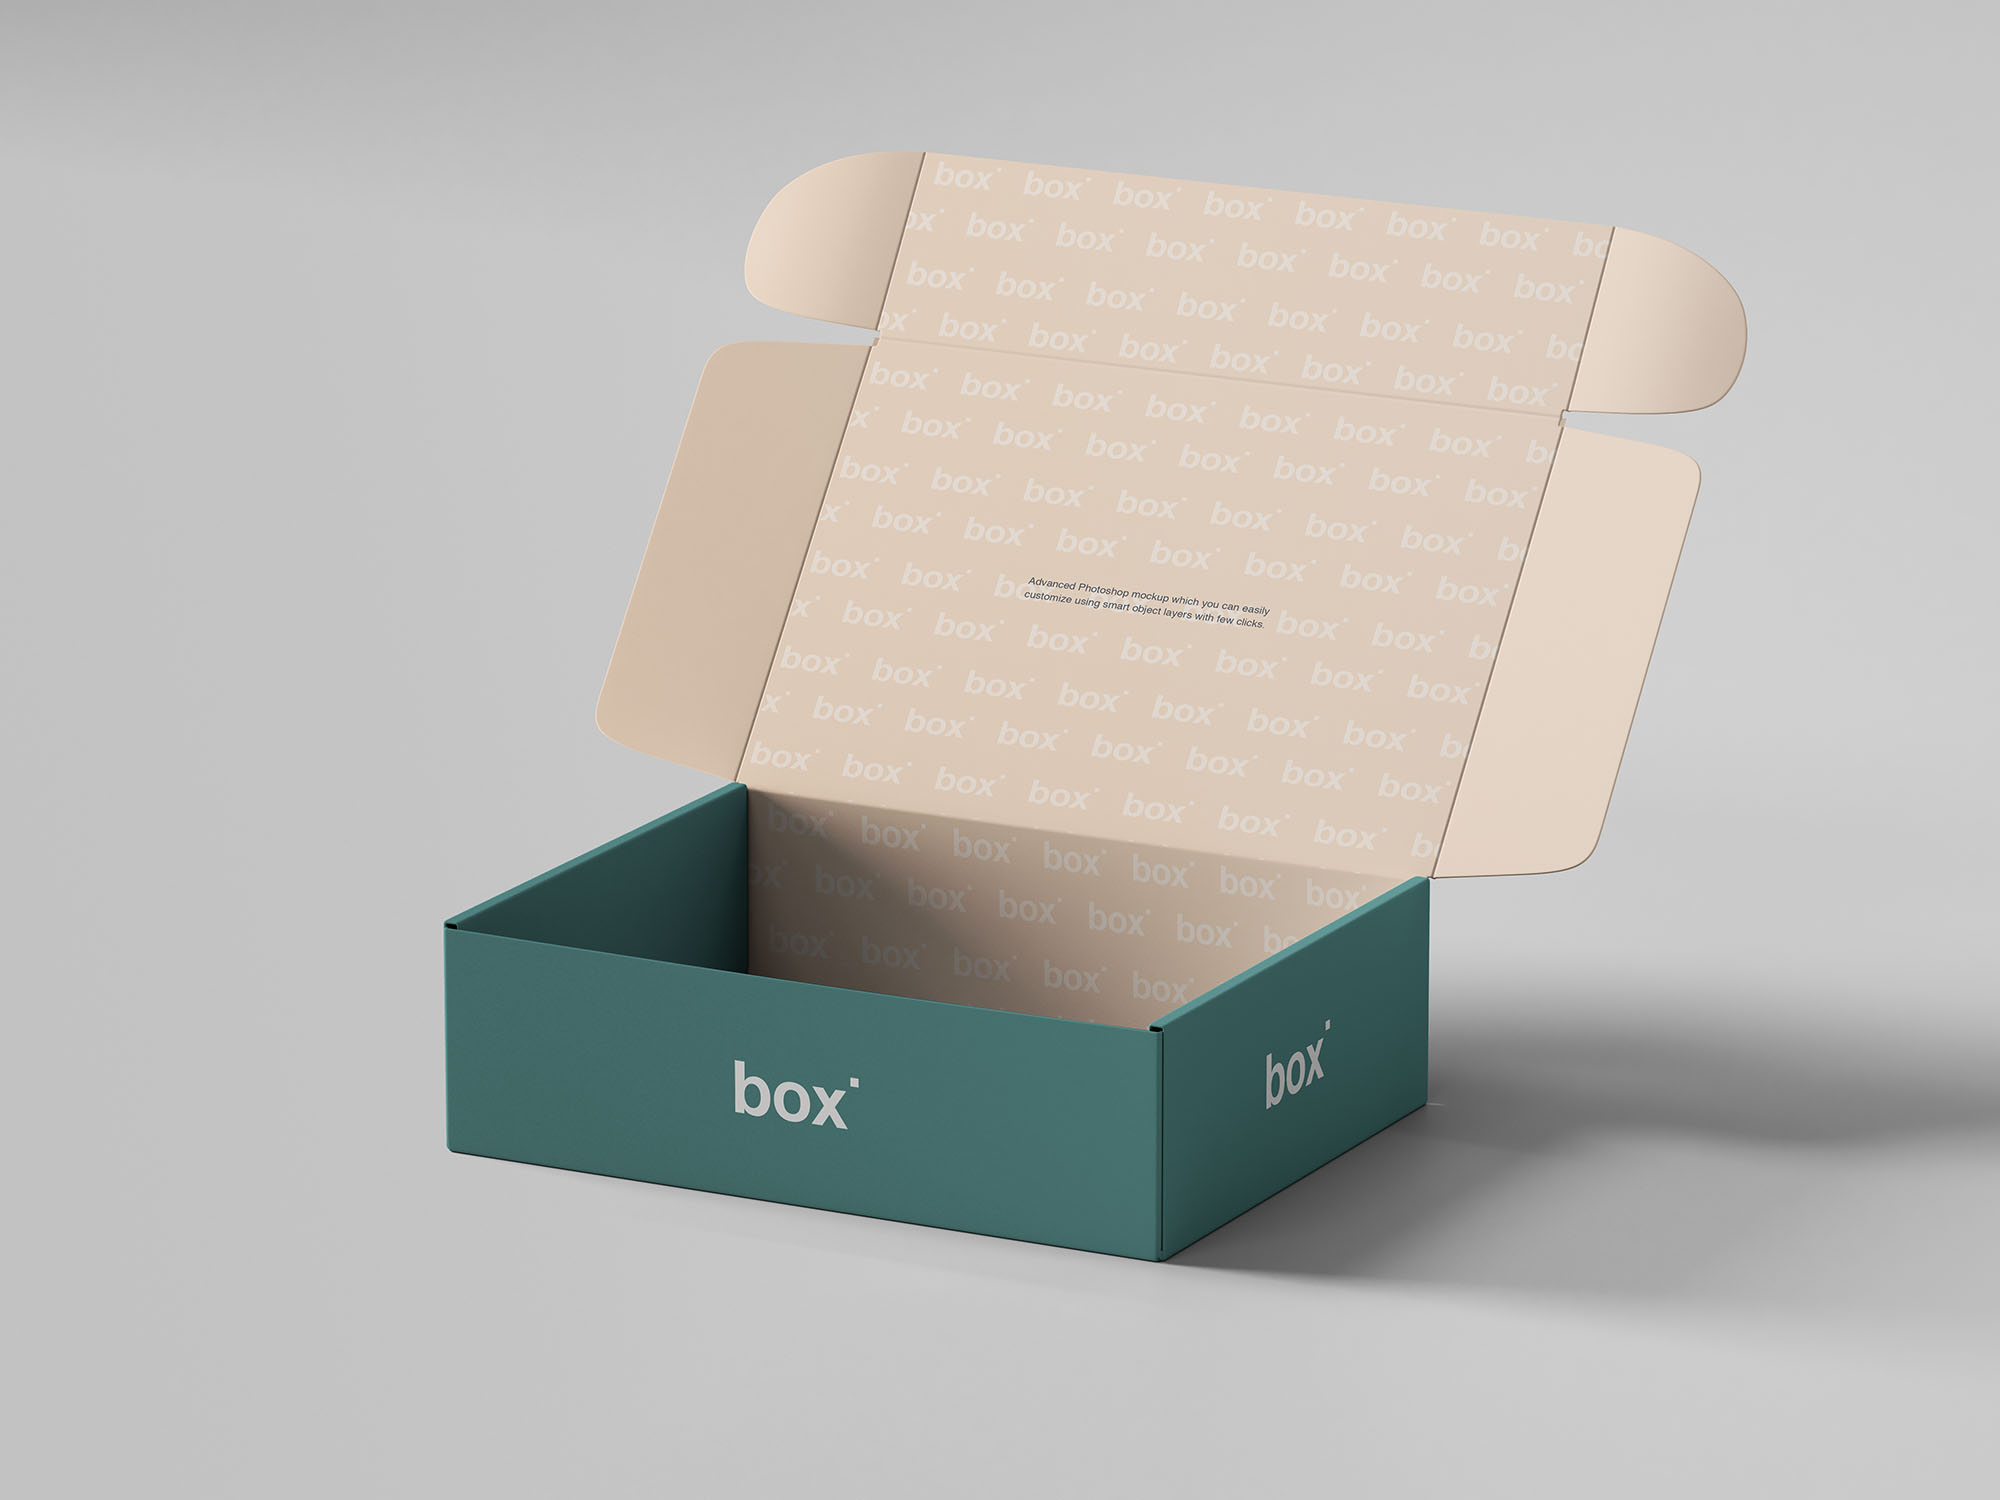 鞋盒包装设计展示蚂蚁素材精选模板素材 Pinch Lock Box Mockup插图